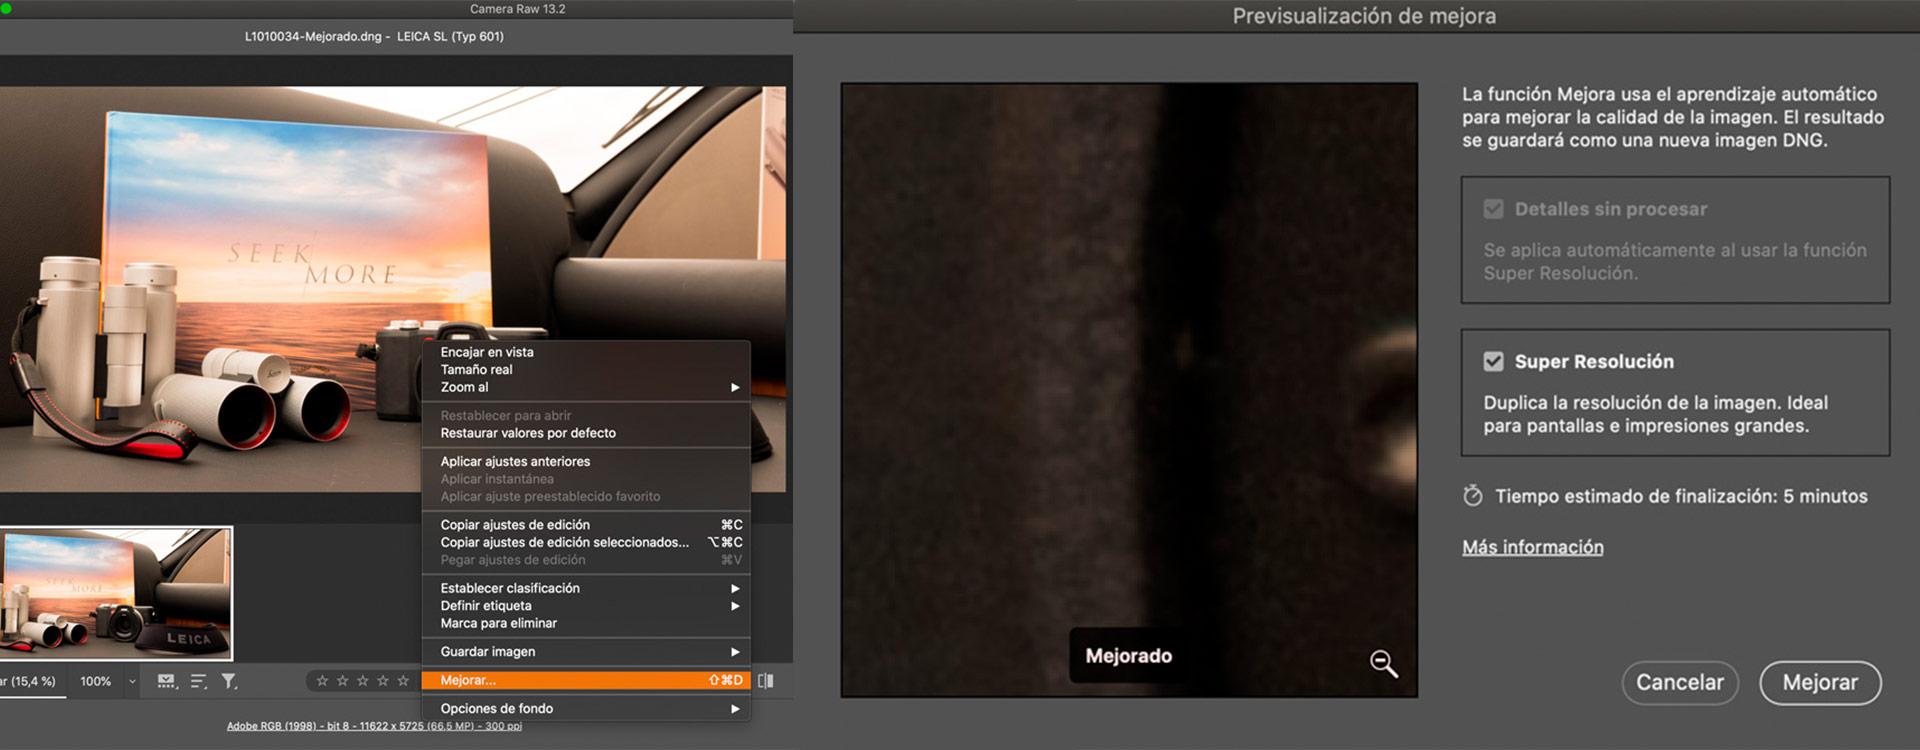 Super Resolución de Adobe Camera RAW 13.2 - Probamos la IA con Photoshop